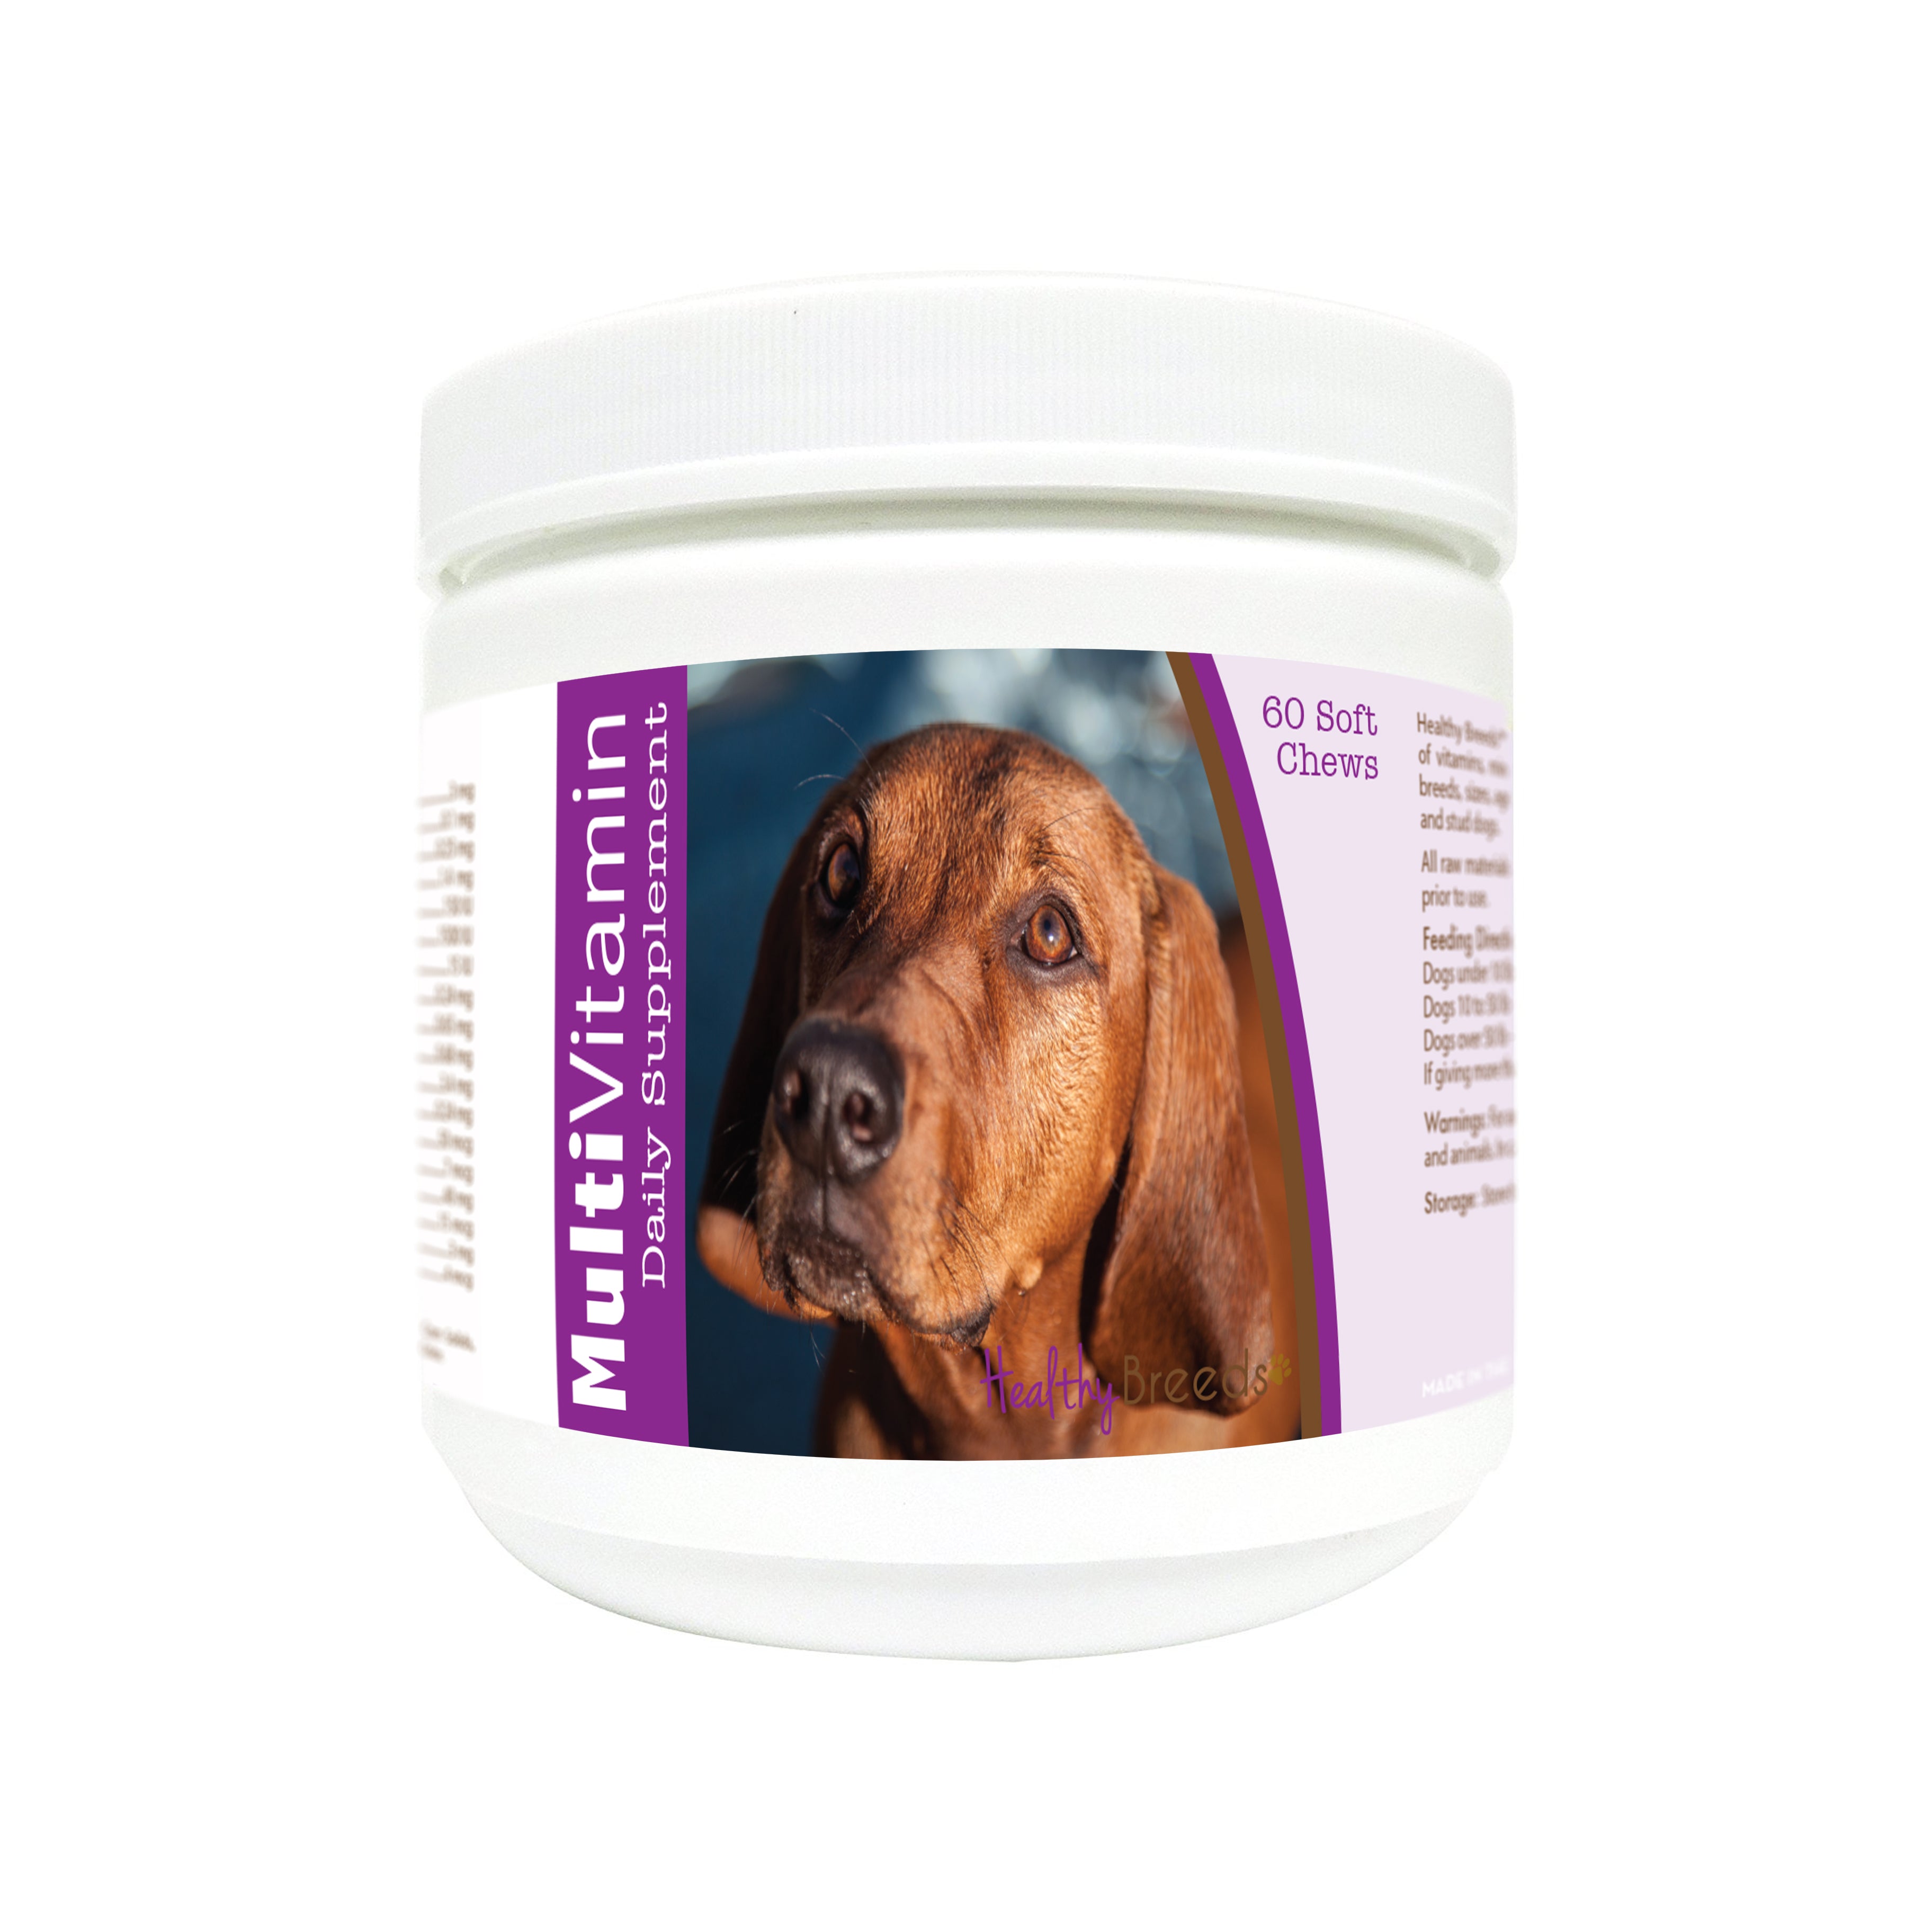 Redbone Coonhound Multi-Vitamin Soft Chews 60 Count